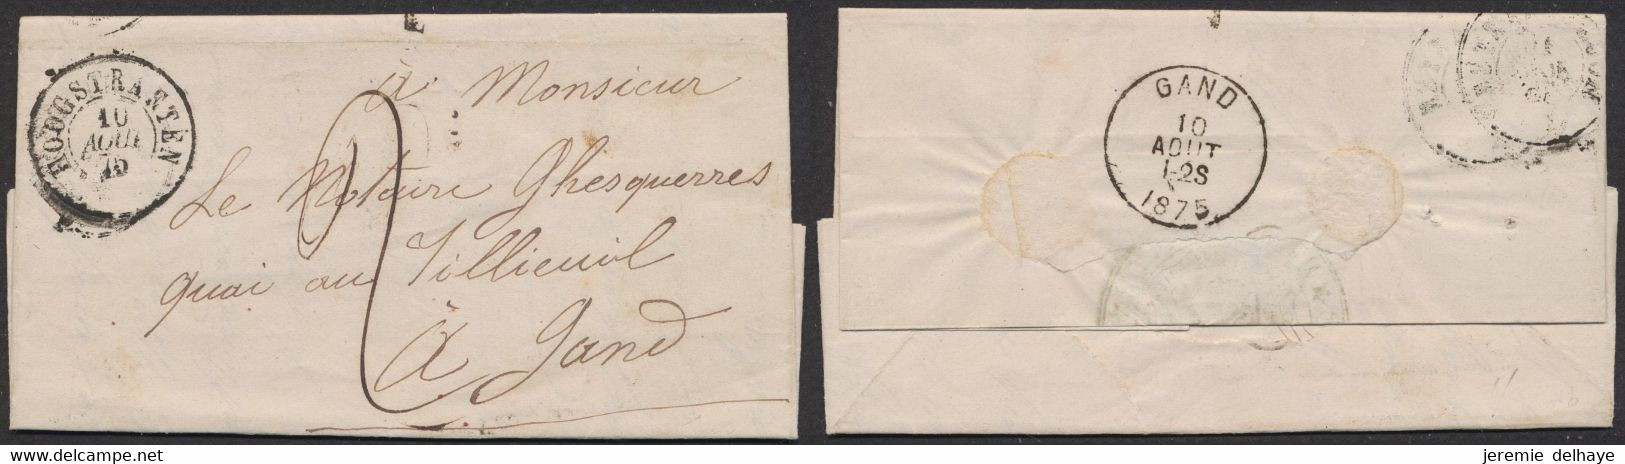 LAC Non Affranchie Datée De Hoogstraeten (1875) + Cachet DC Et Port "2" > Gand / Intérieur Déclaration De Versement DC G - Post Office Leaflets